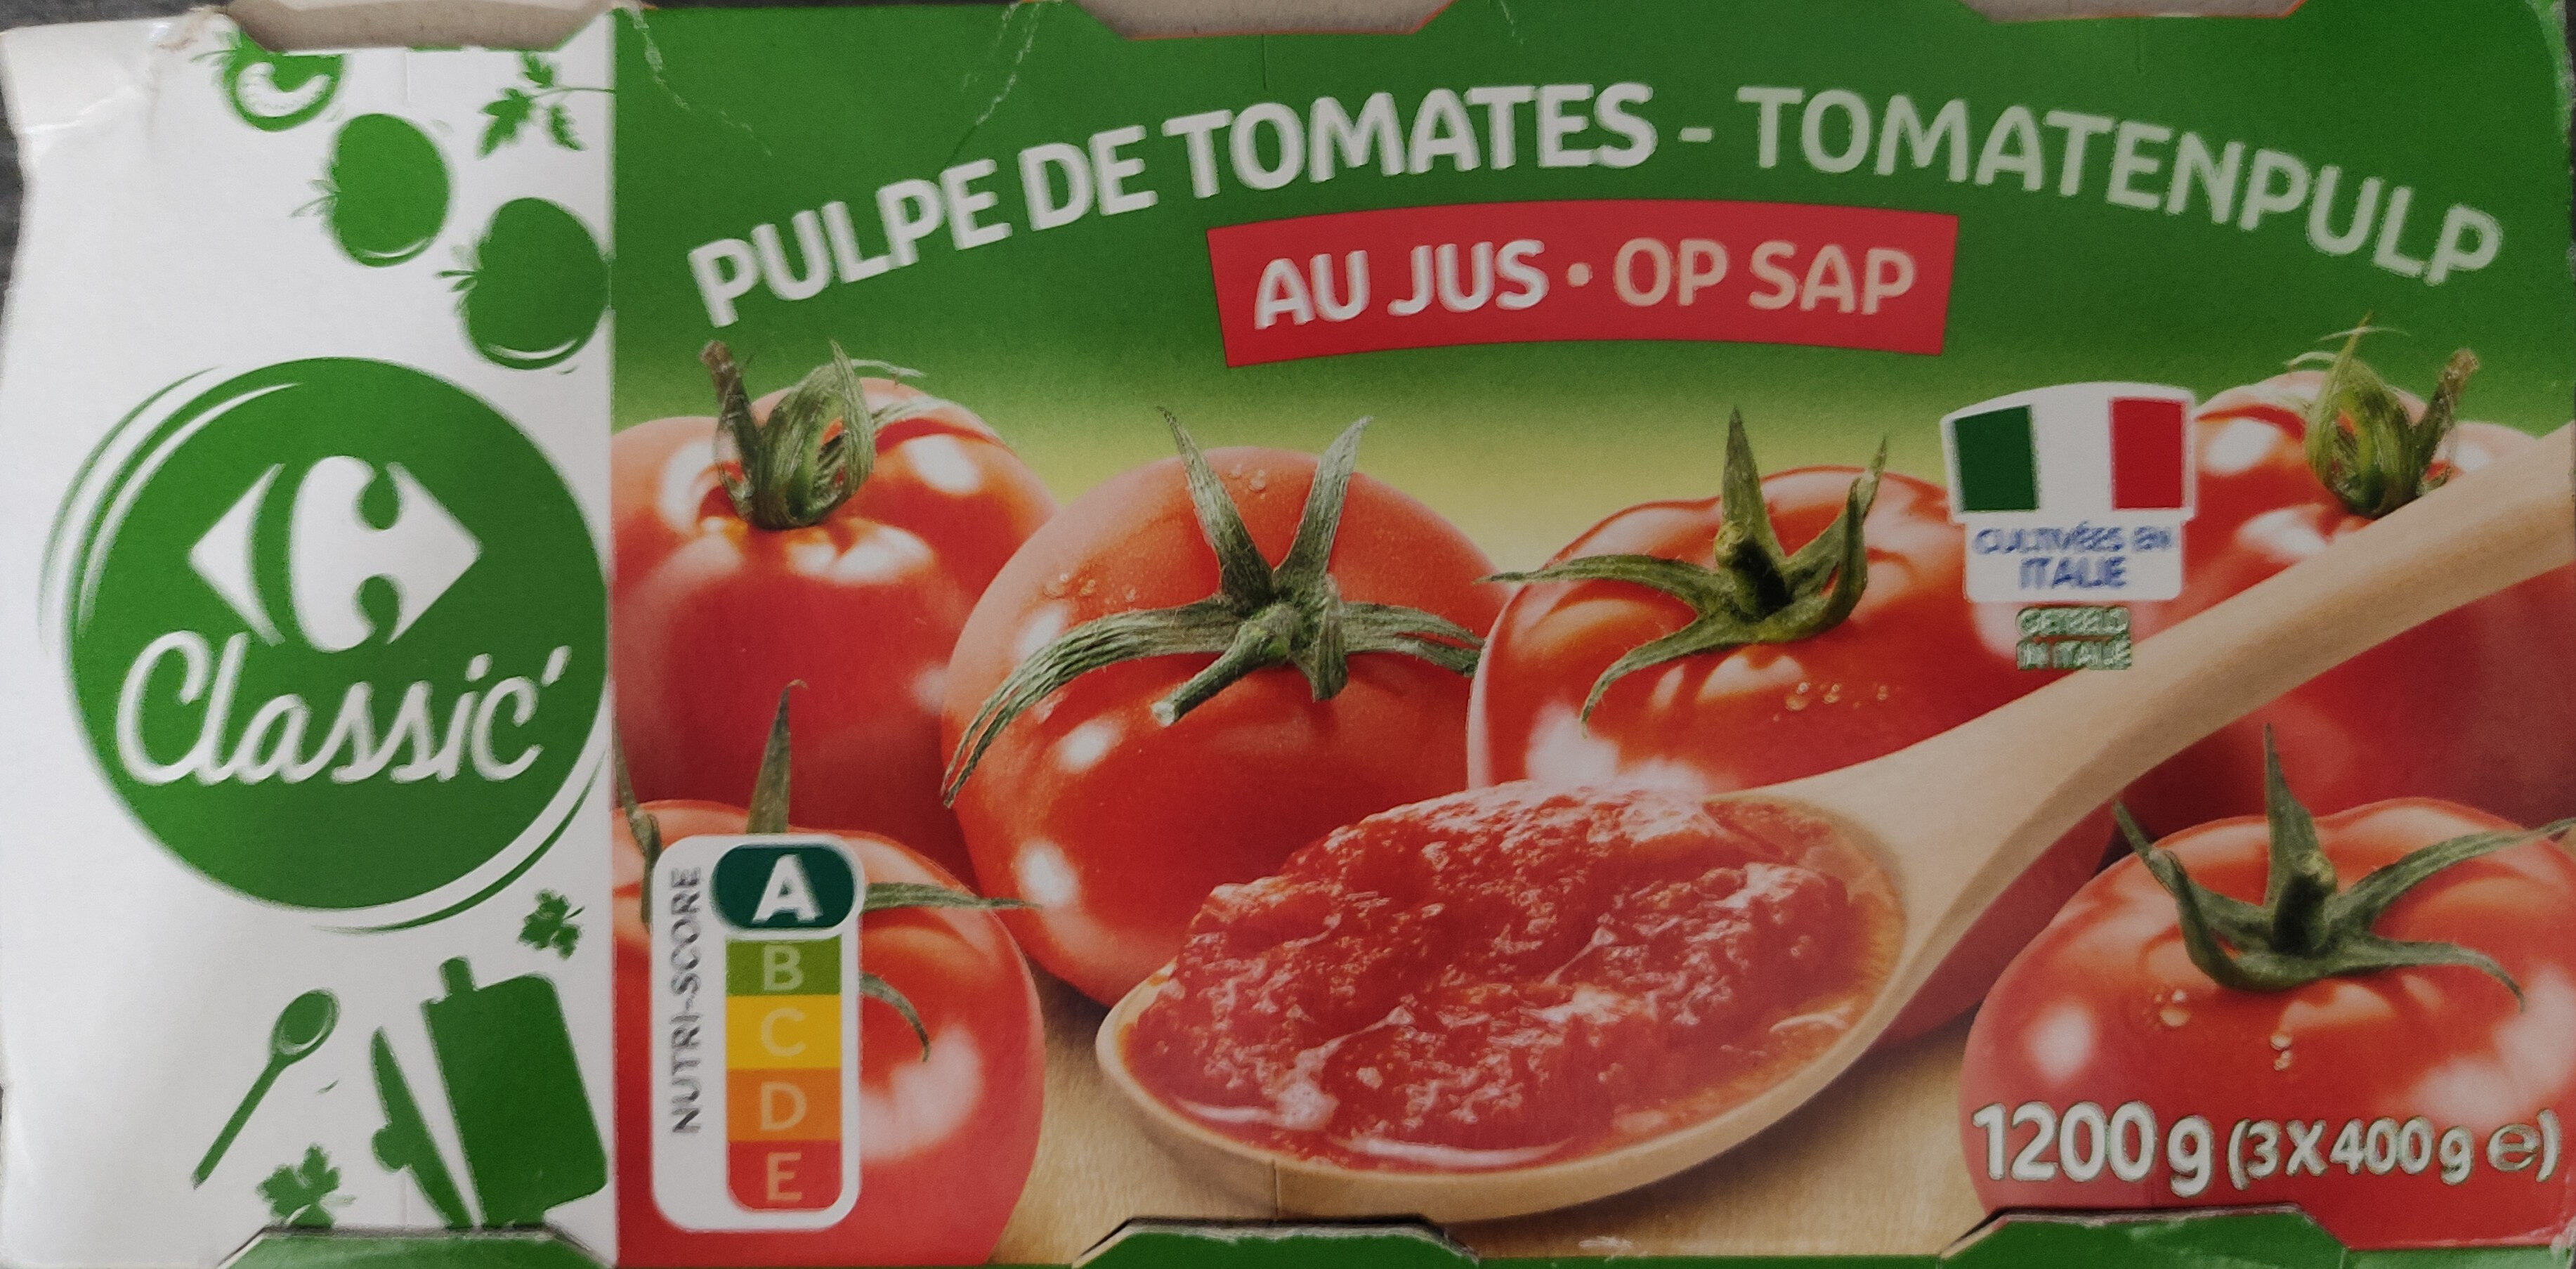 Pulpe de tomates au jus - Produit